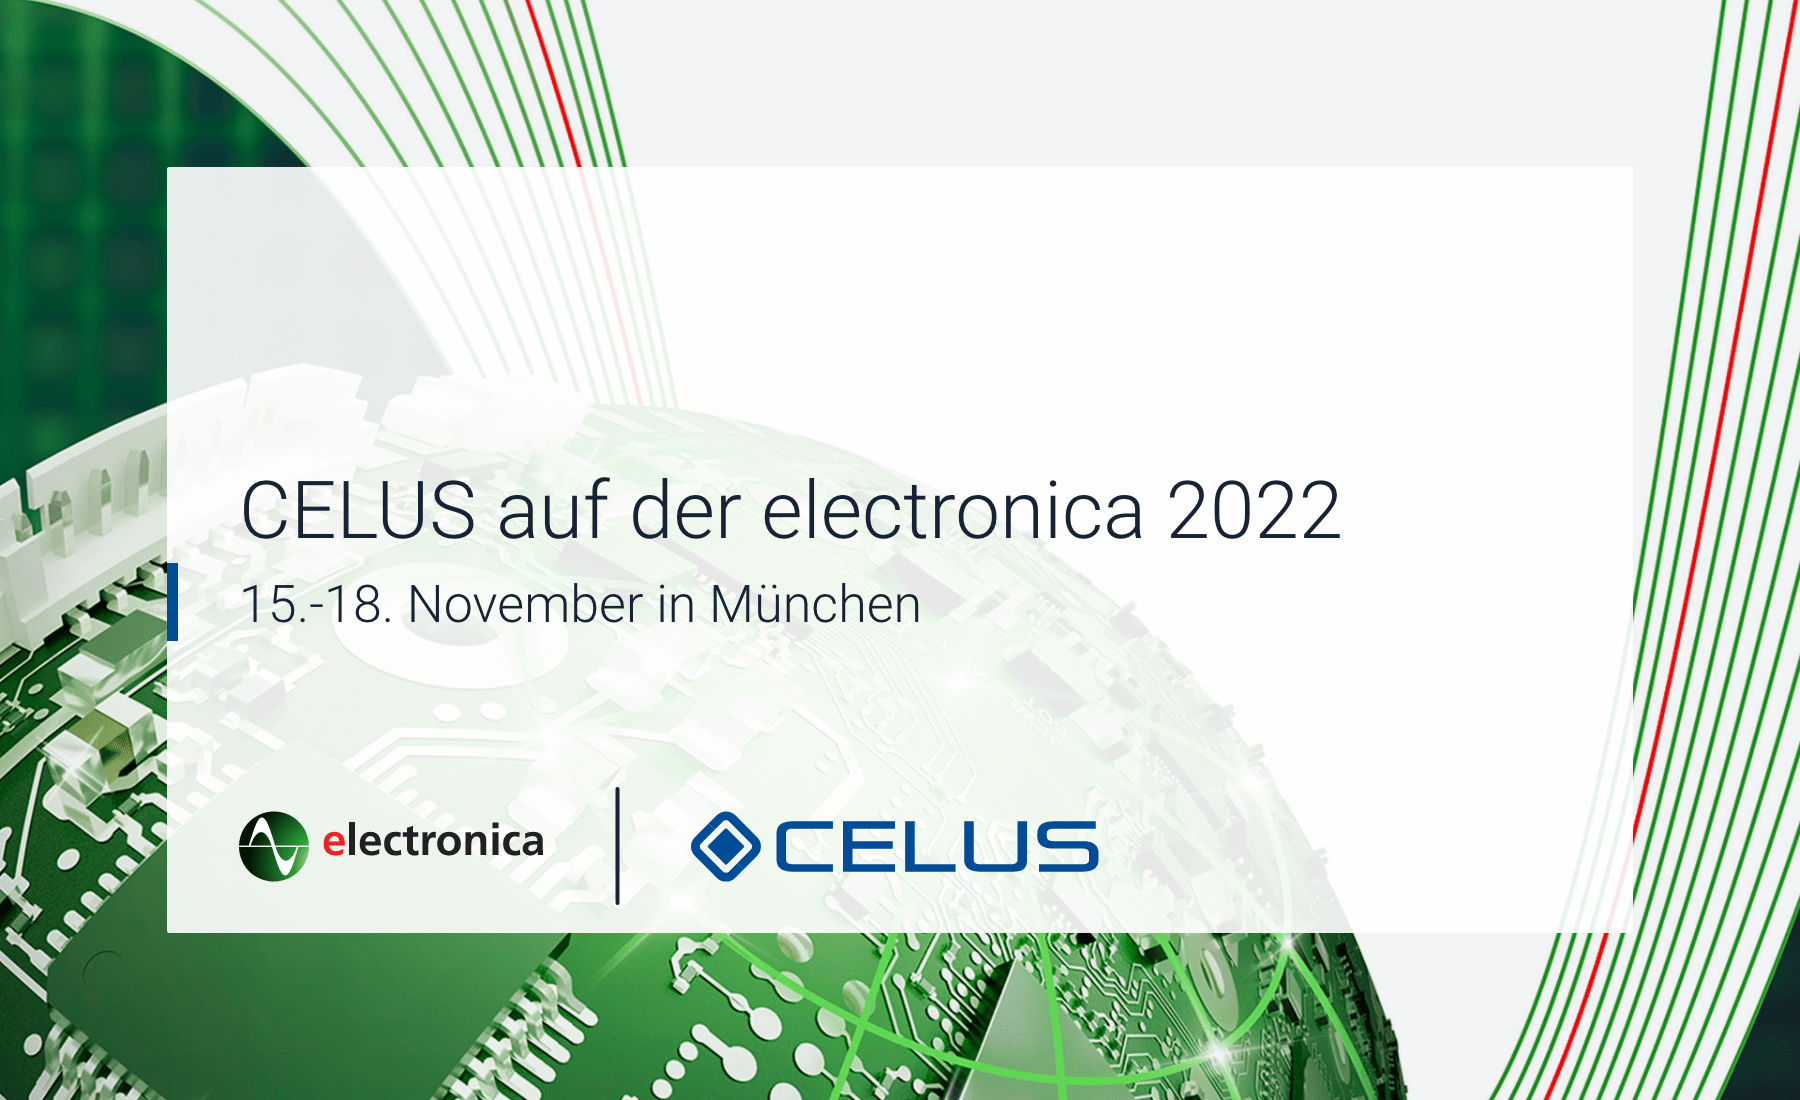 CELUS ist Teil der electronica 2022